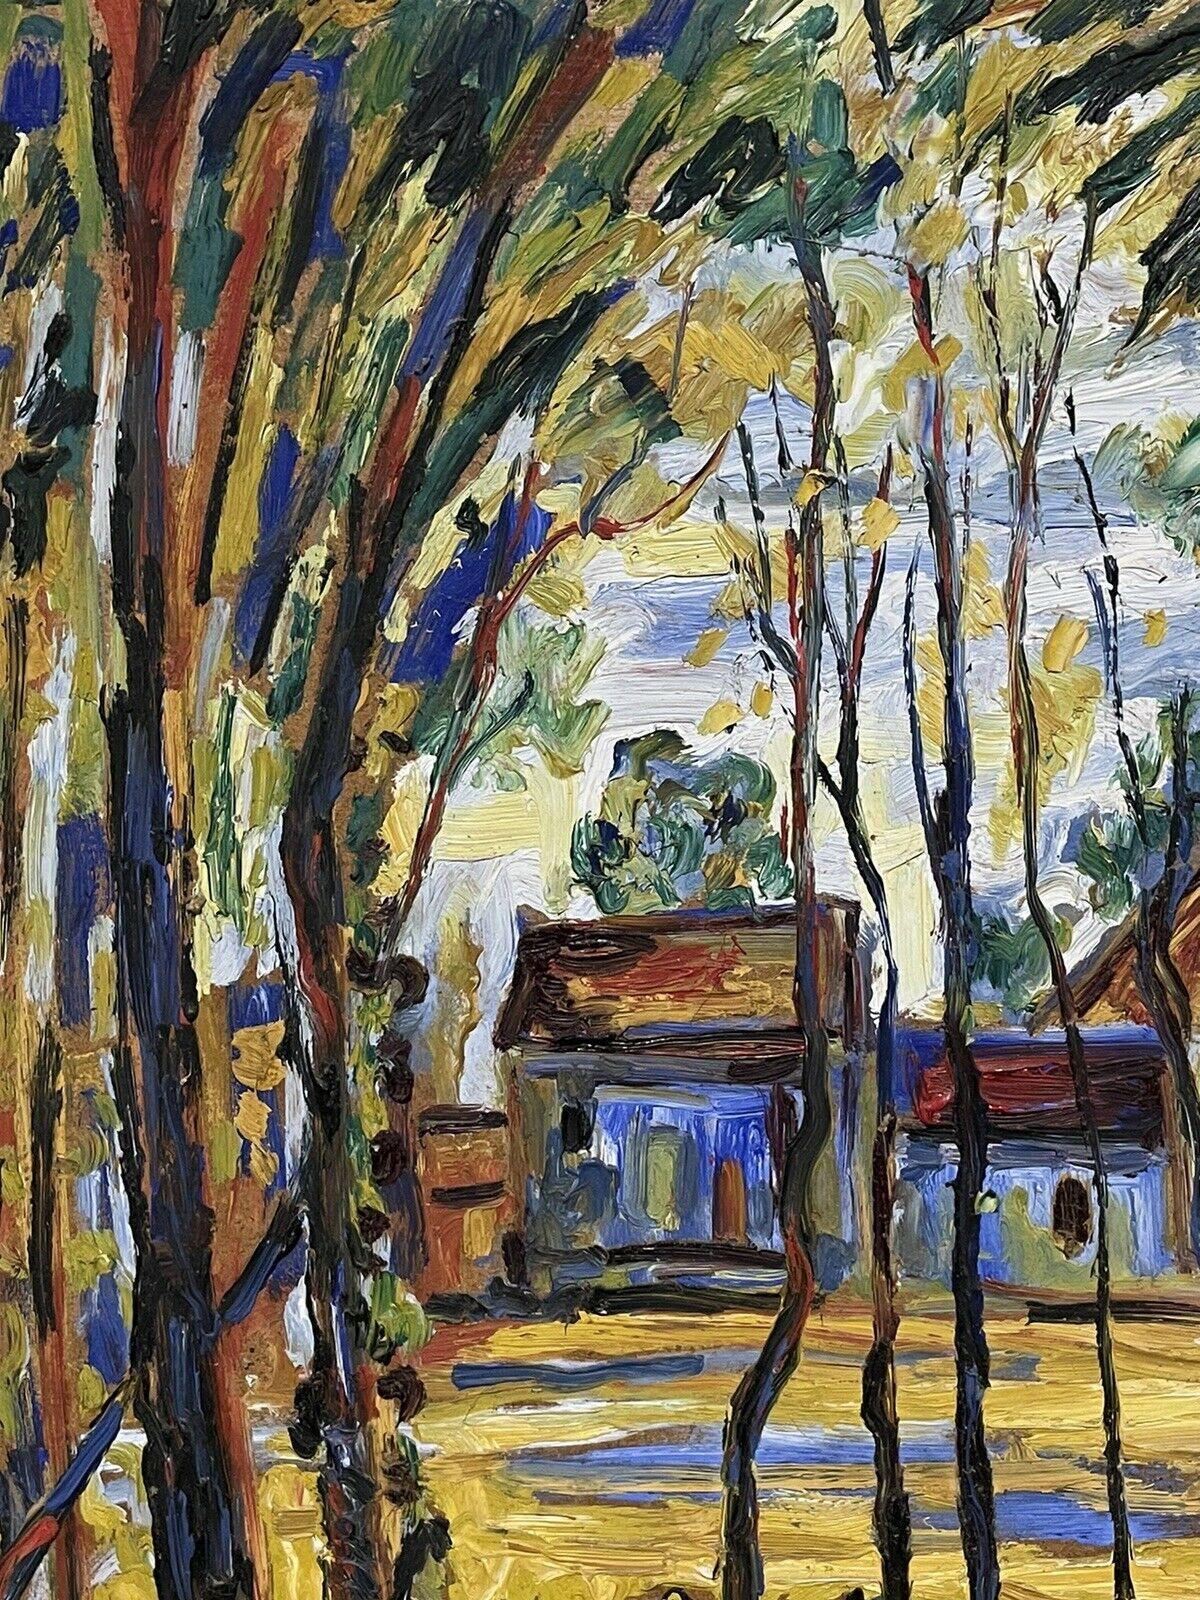 Tableau fauviste français du milieu du 20e siècle, vue de paysage du sud de la France, signé  - Cubisme Painting par Post-Impressionist